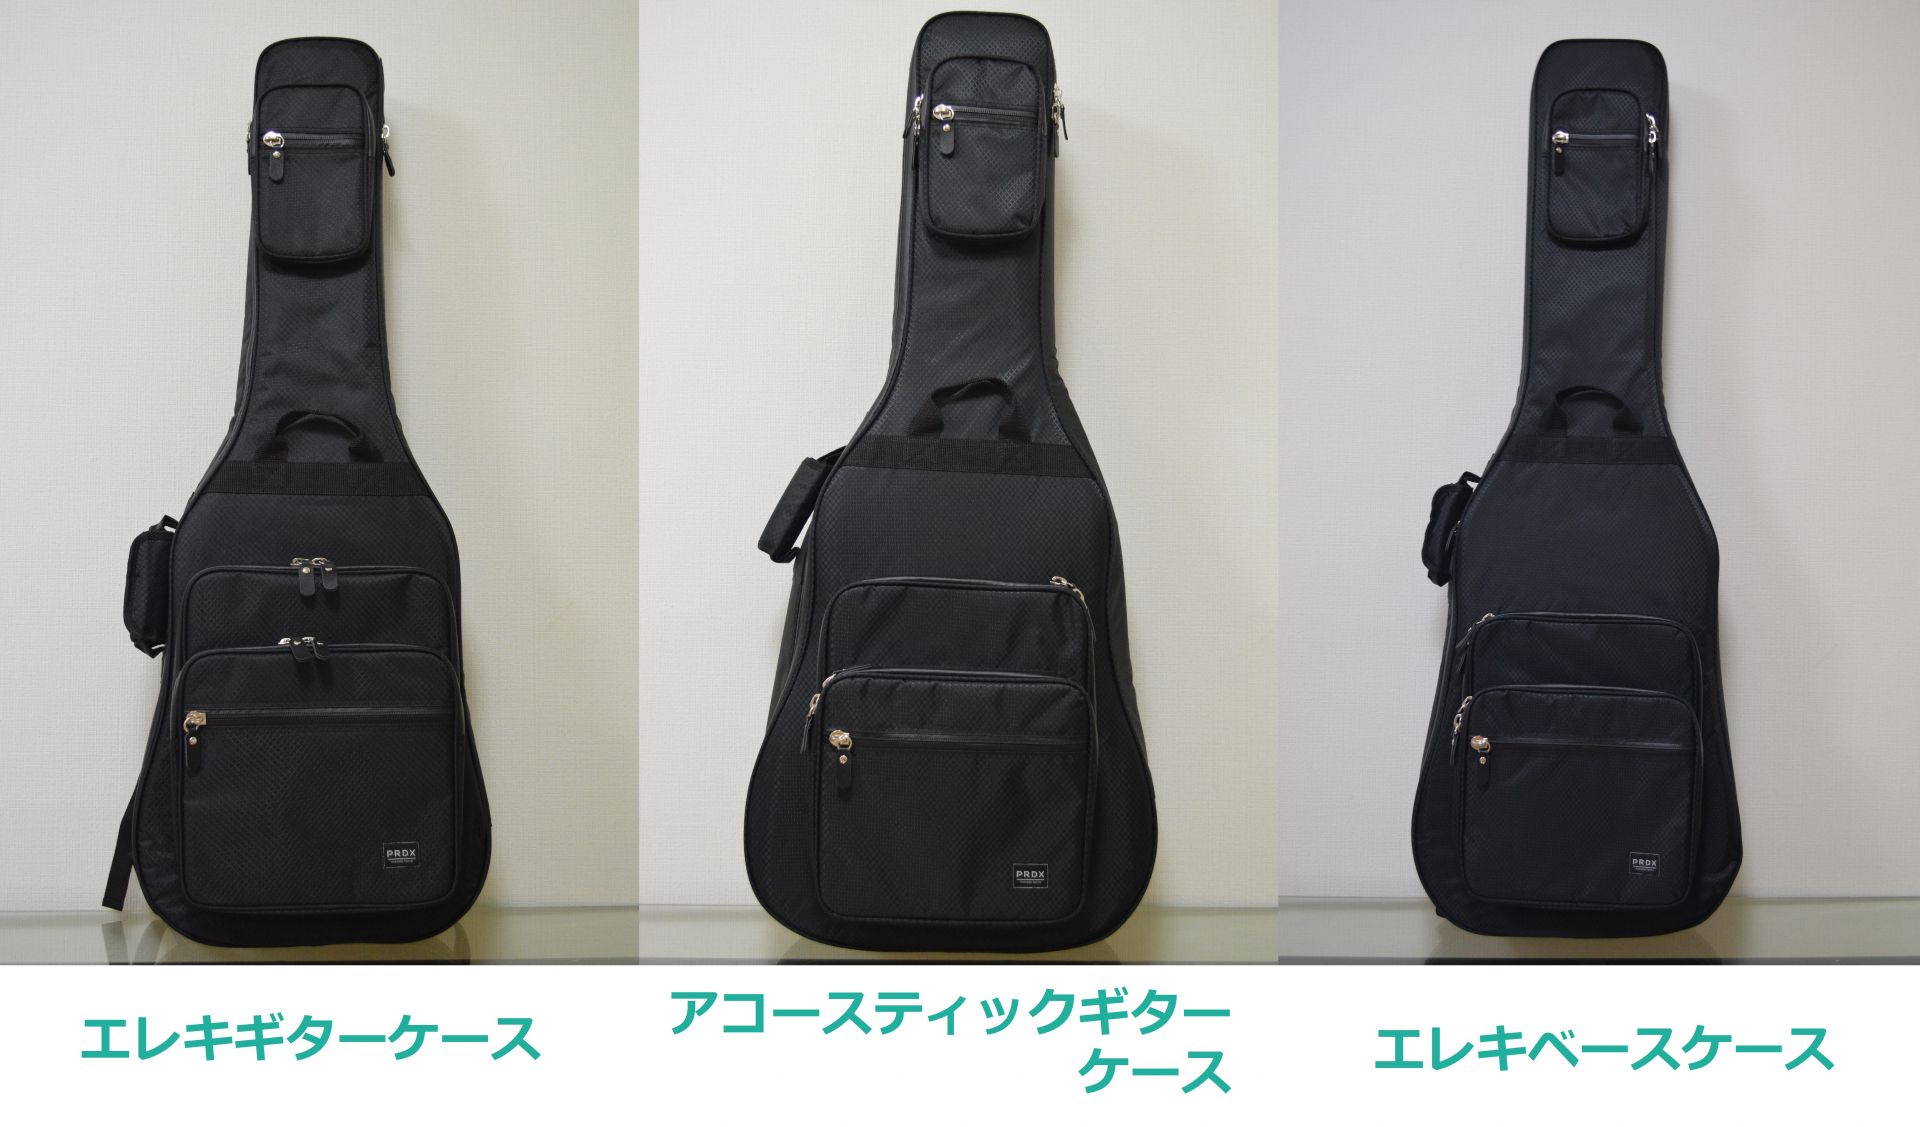 【ギターケース】PARADOX TOKYO 追加ラインナップ ギターケース発売！